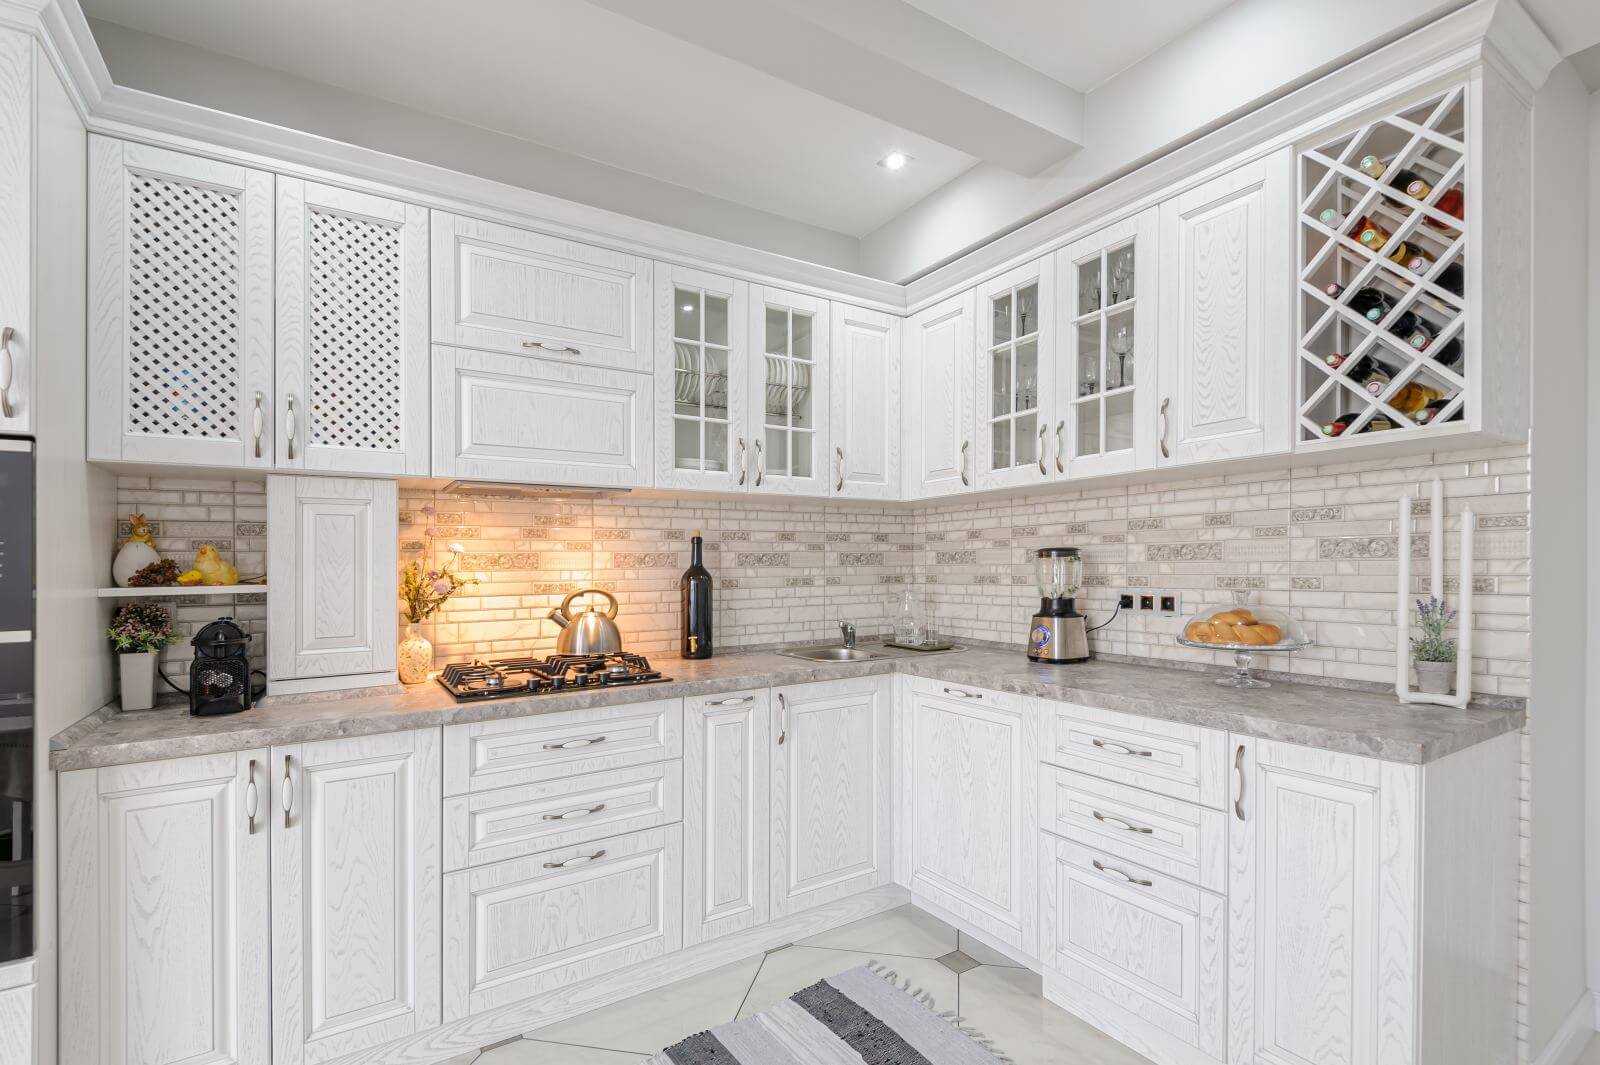 interior of modern white wooden kitchen in luxury home